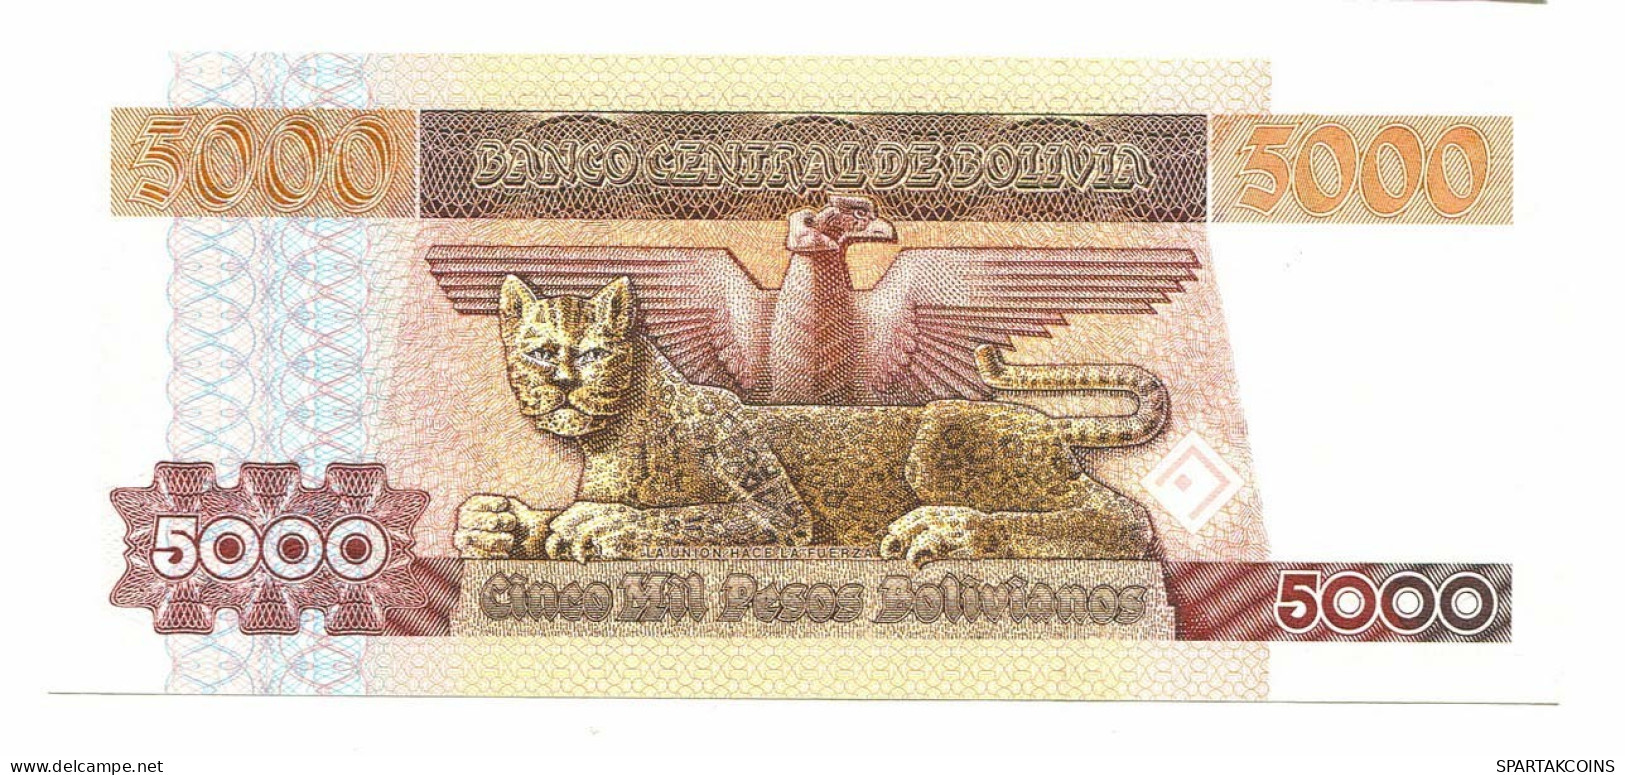 BOLIVIA 5000 PESOS BOLIVIANOS 1984 AUNC Paper Money Banknote #P10810.4 - [11] Emissioni Locali